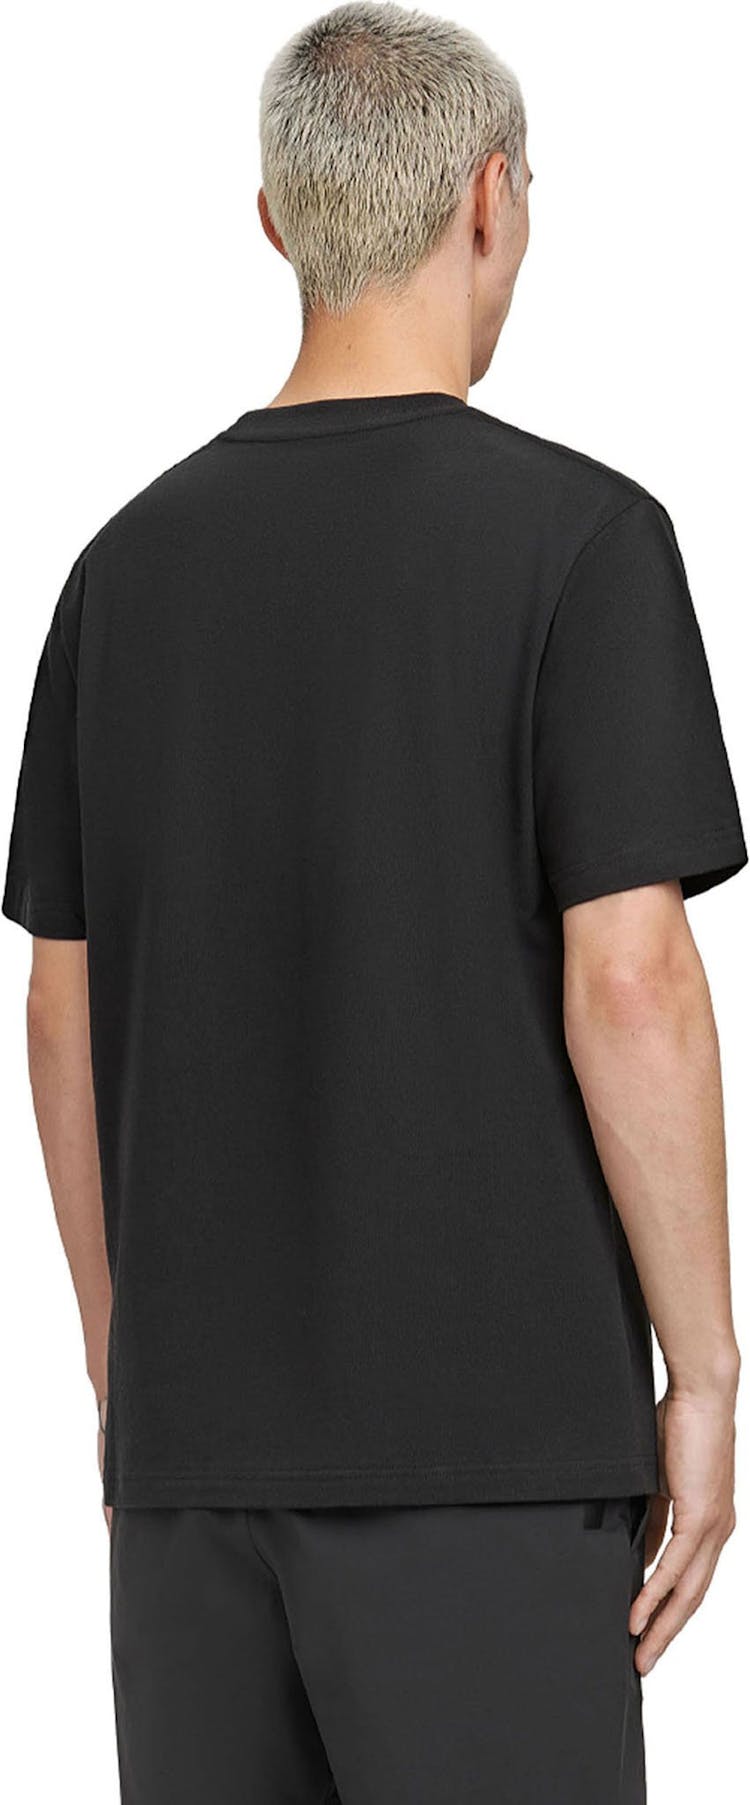 Numéro de l'image de la galerie de produits 5 pour le produit T-shirt Evade - Homme